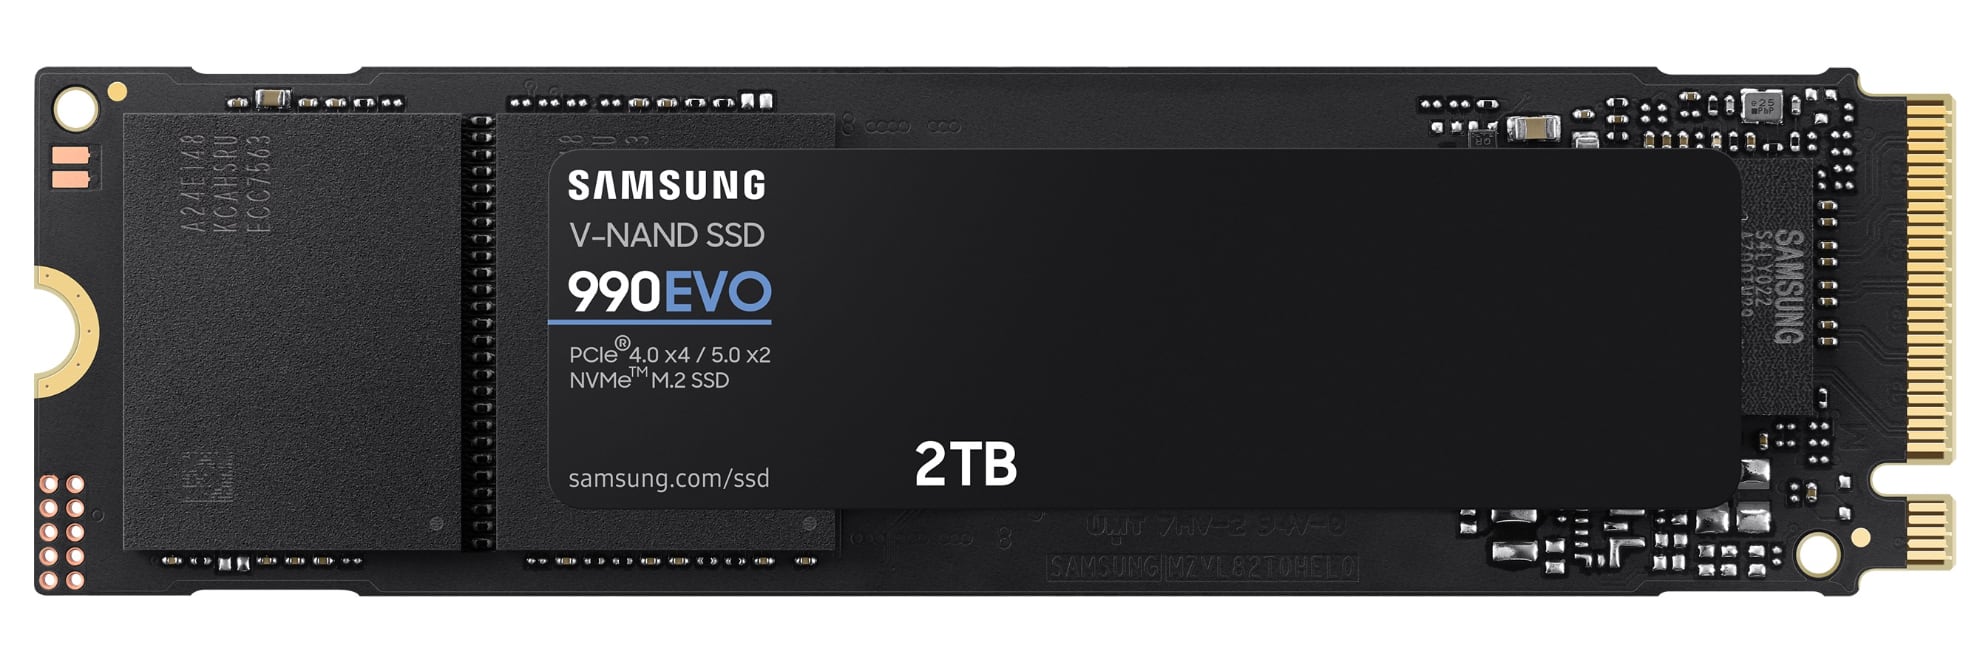 Samsung zapowiada szybki dysk SSD 990 EVO, który będzie kosztował 210 USD za 2 TB-2